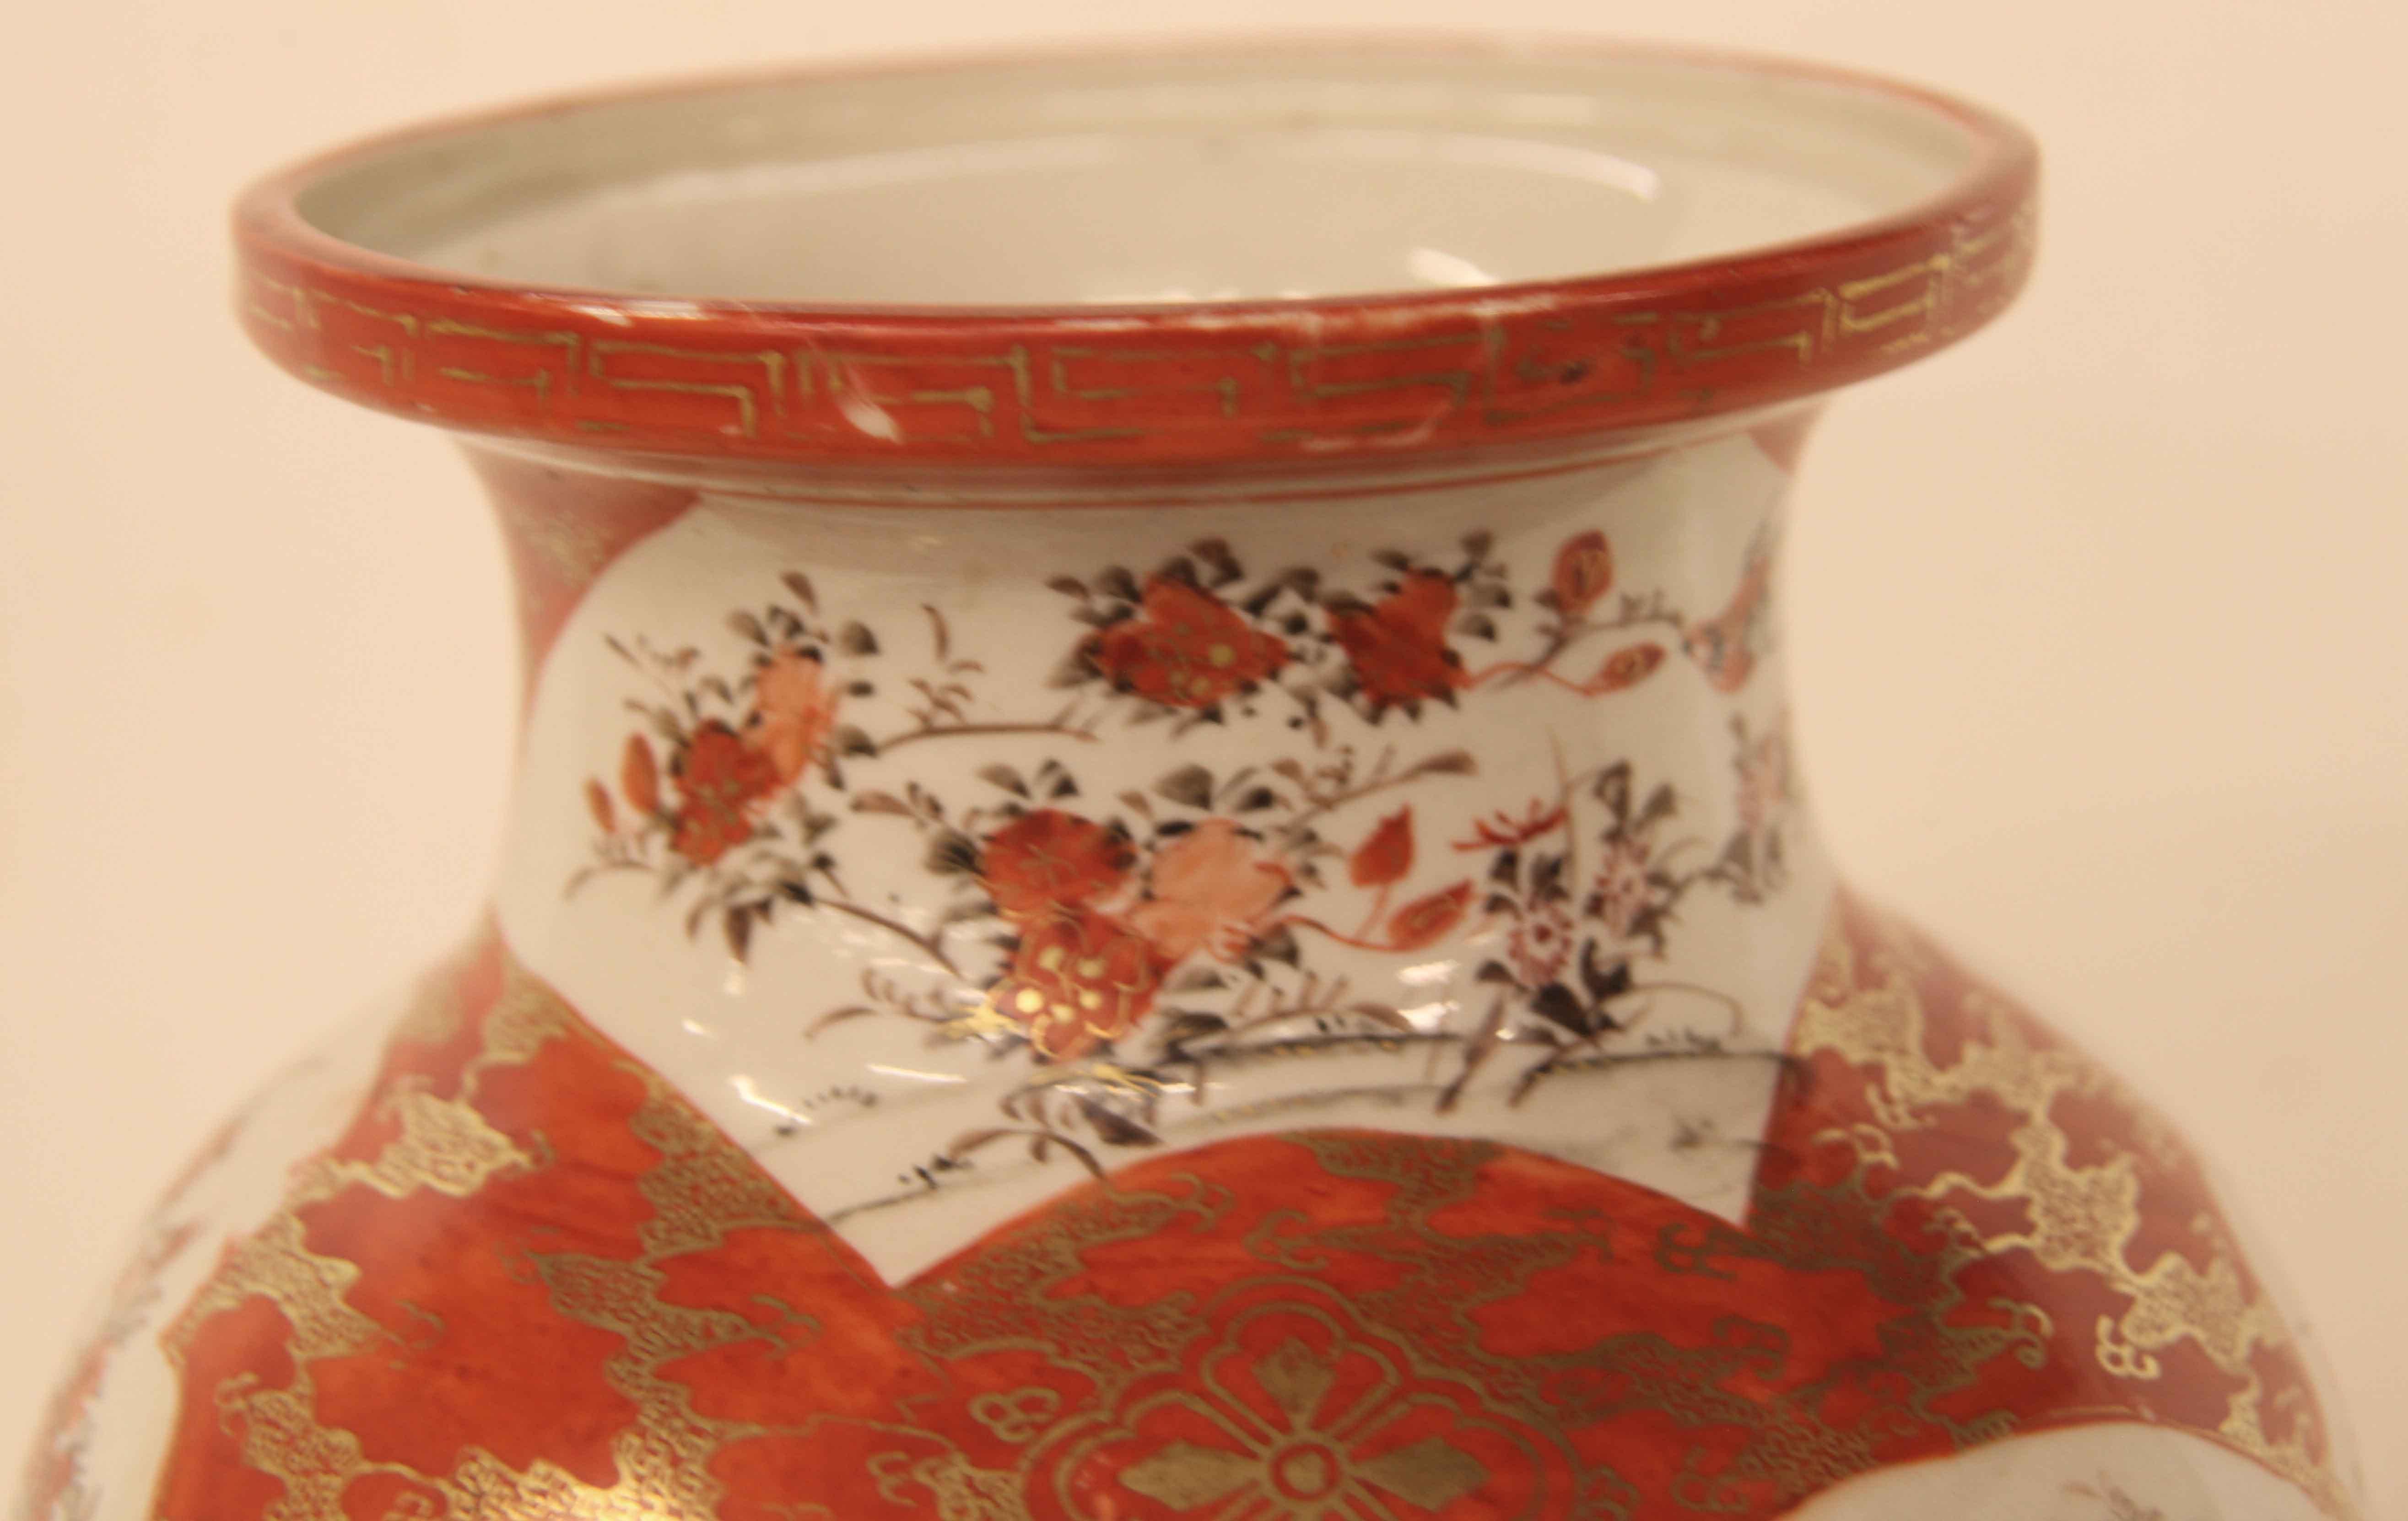 Japanische Kutani-Vase, mit griechischem Schlüsselmuster am Rand,  mehrere große Tafeln mit großen und kleinen Vögeln, Blumen und Blattwerk, ausgezeichnete vergoldete Verzierungen und Highlights.